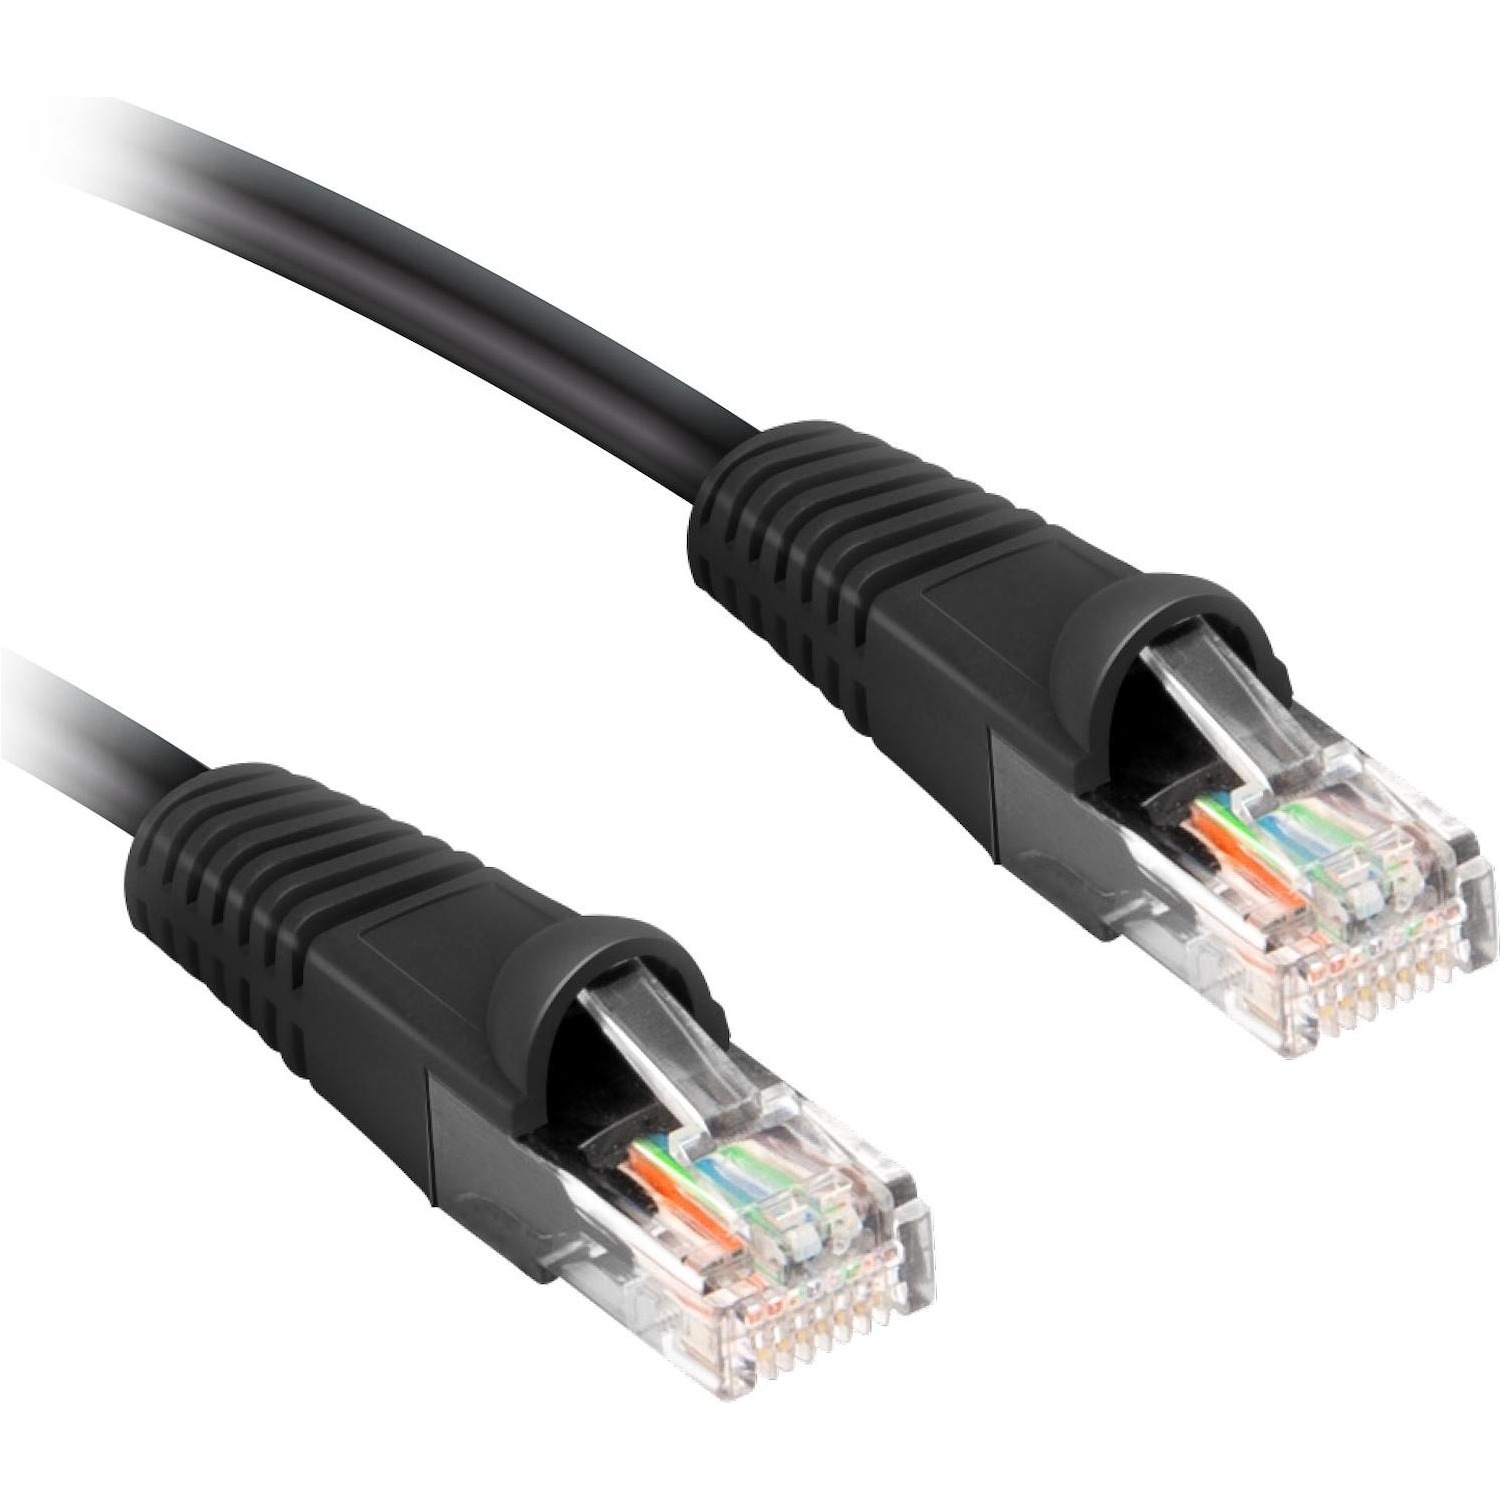 Immagine per Cavo di rete per PC UTP cat 6 colore grigio,      connettori RJ45, lunghezza cavo 5 metri da DIMOStore